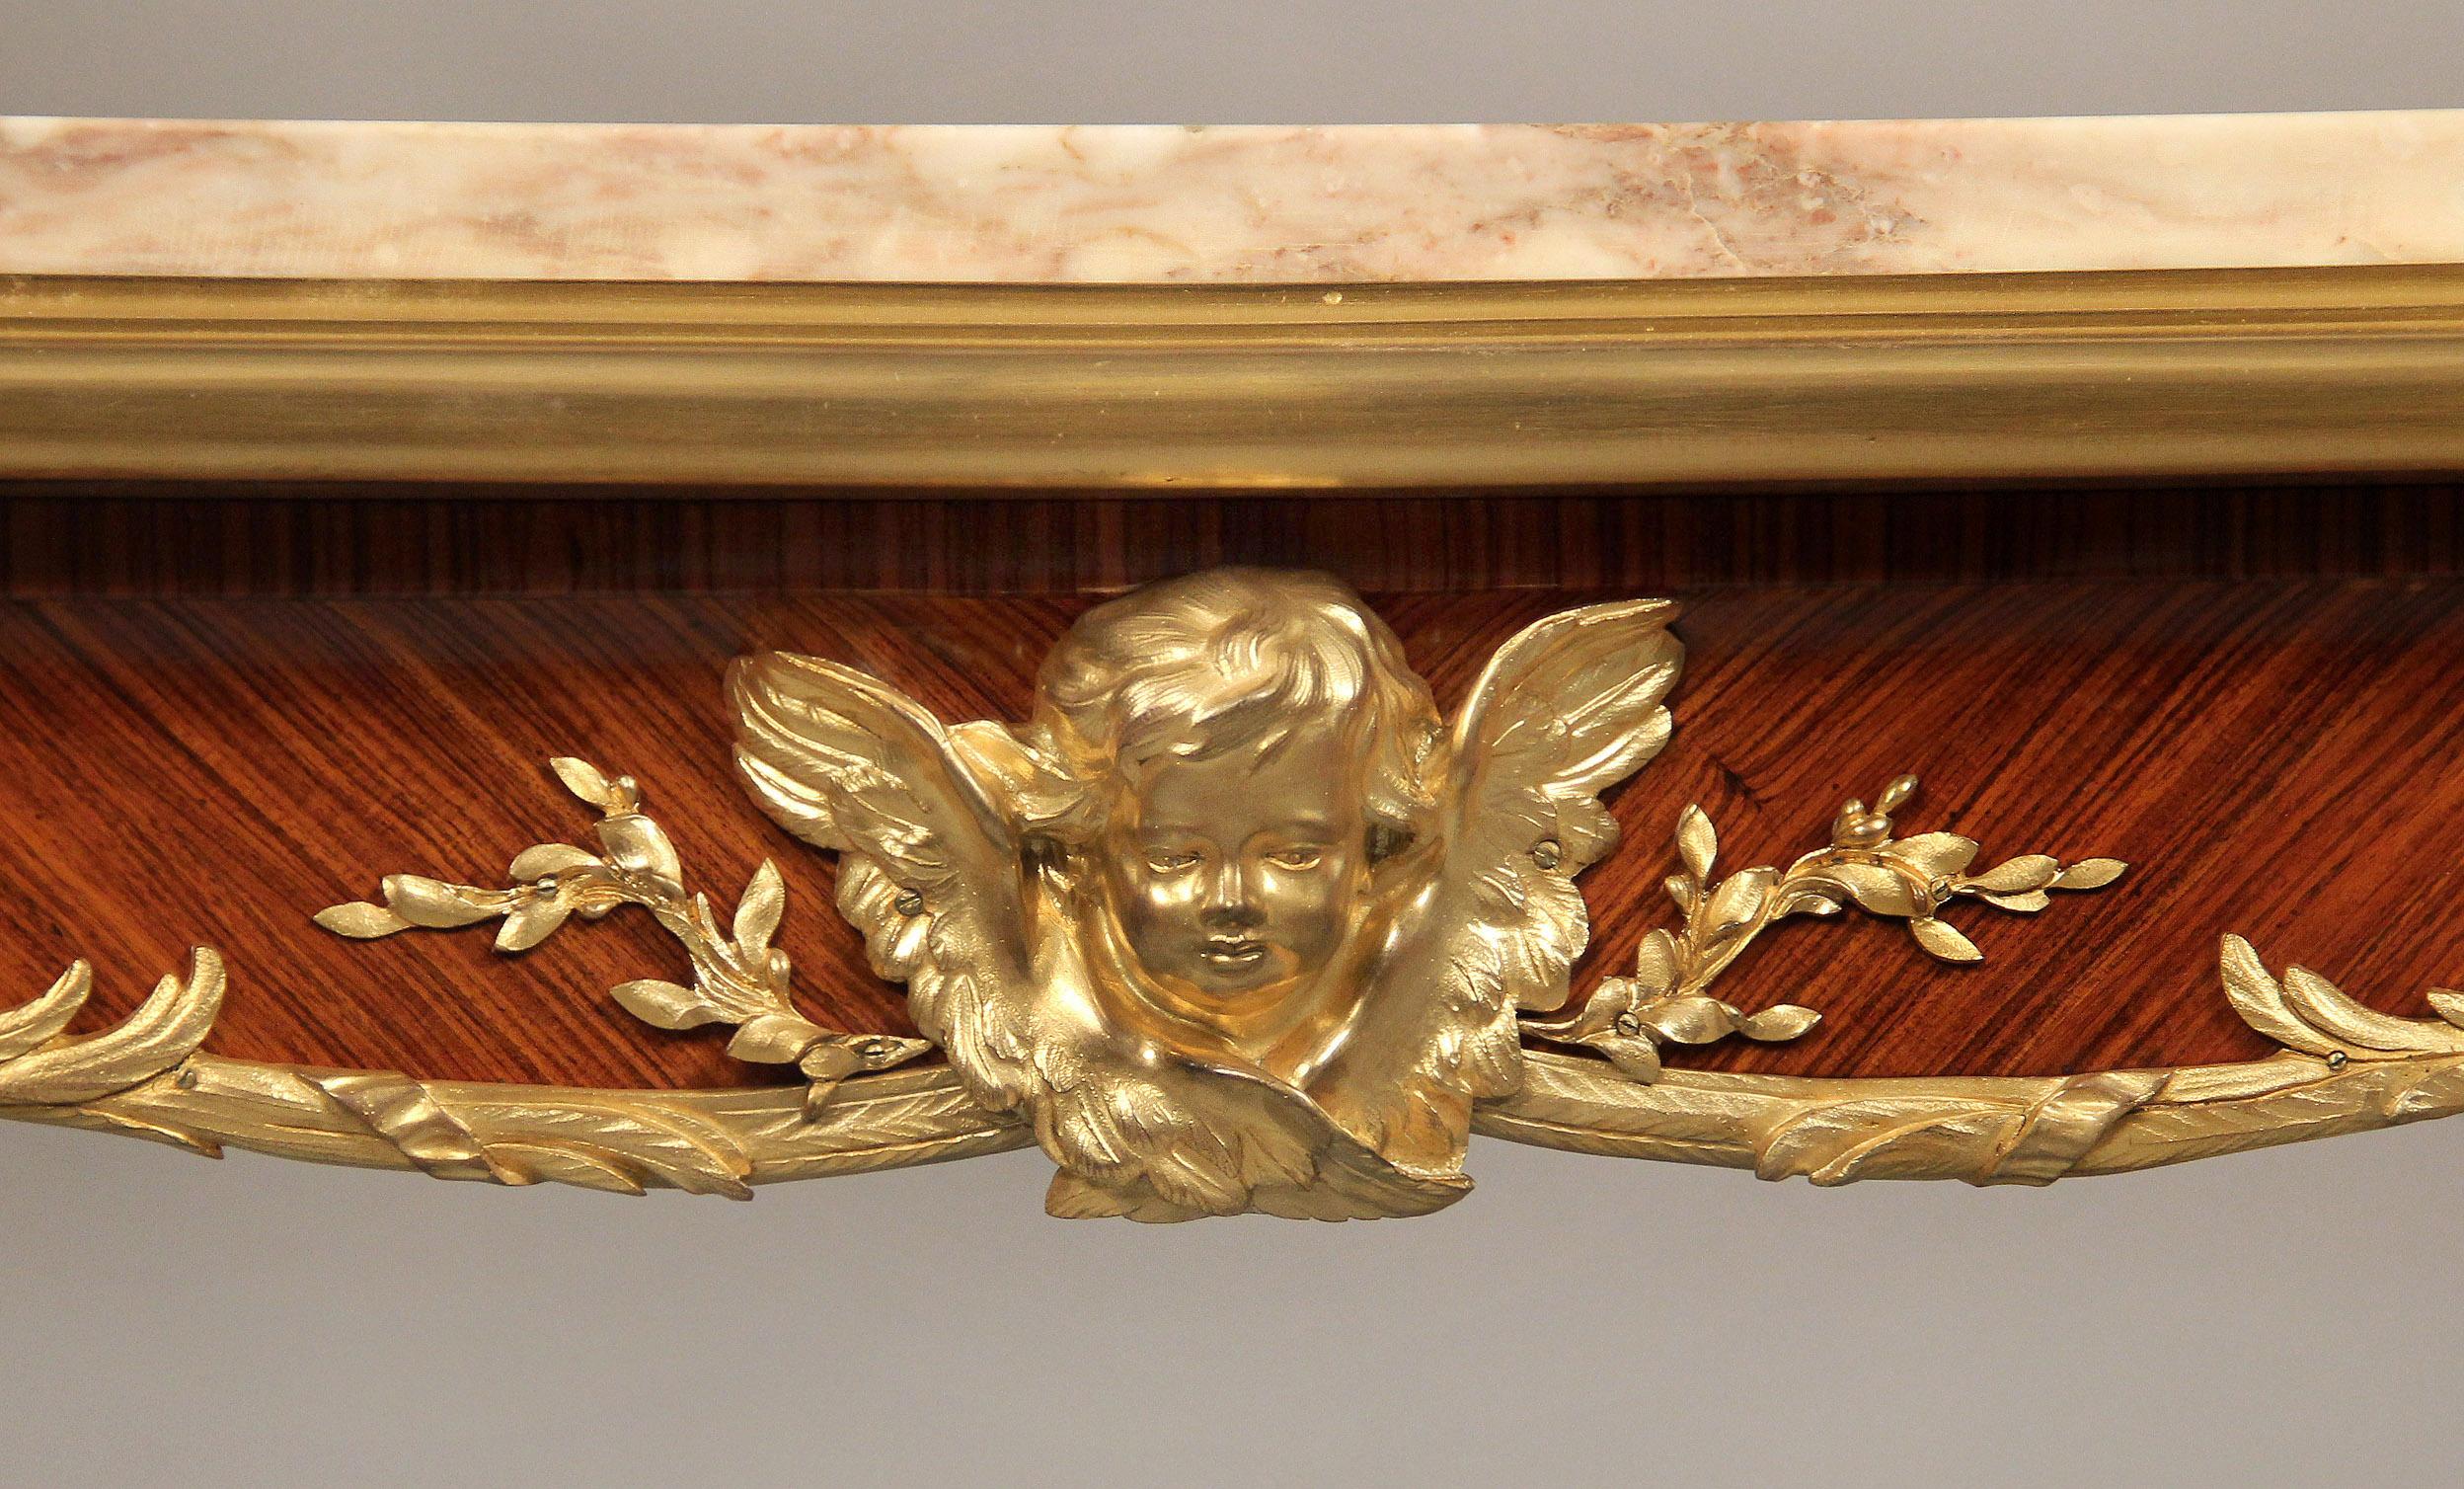 Magnífica mesa de centro de estilo Regencia, montada en bronce dorado, de finales del siglo XIX, obra de François Linke

La encimera, de mármol perfilado, está sobre un único cajón centrado con una cabeza de querubín alado; el respaldo tiene